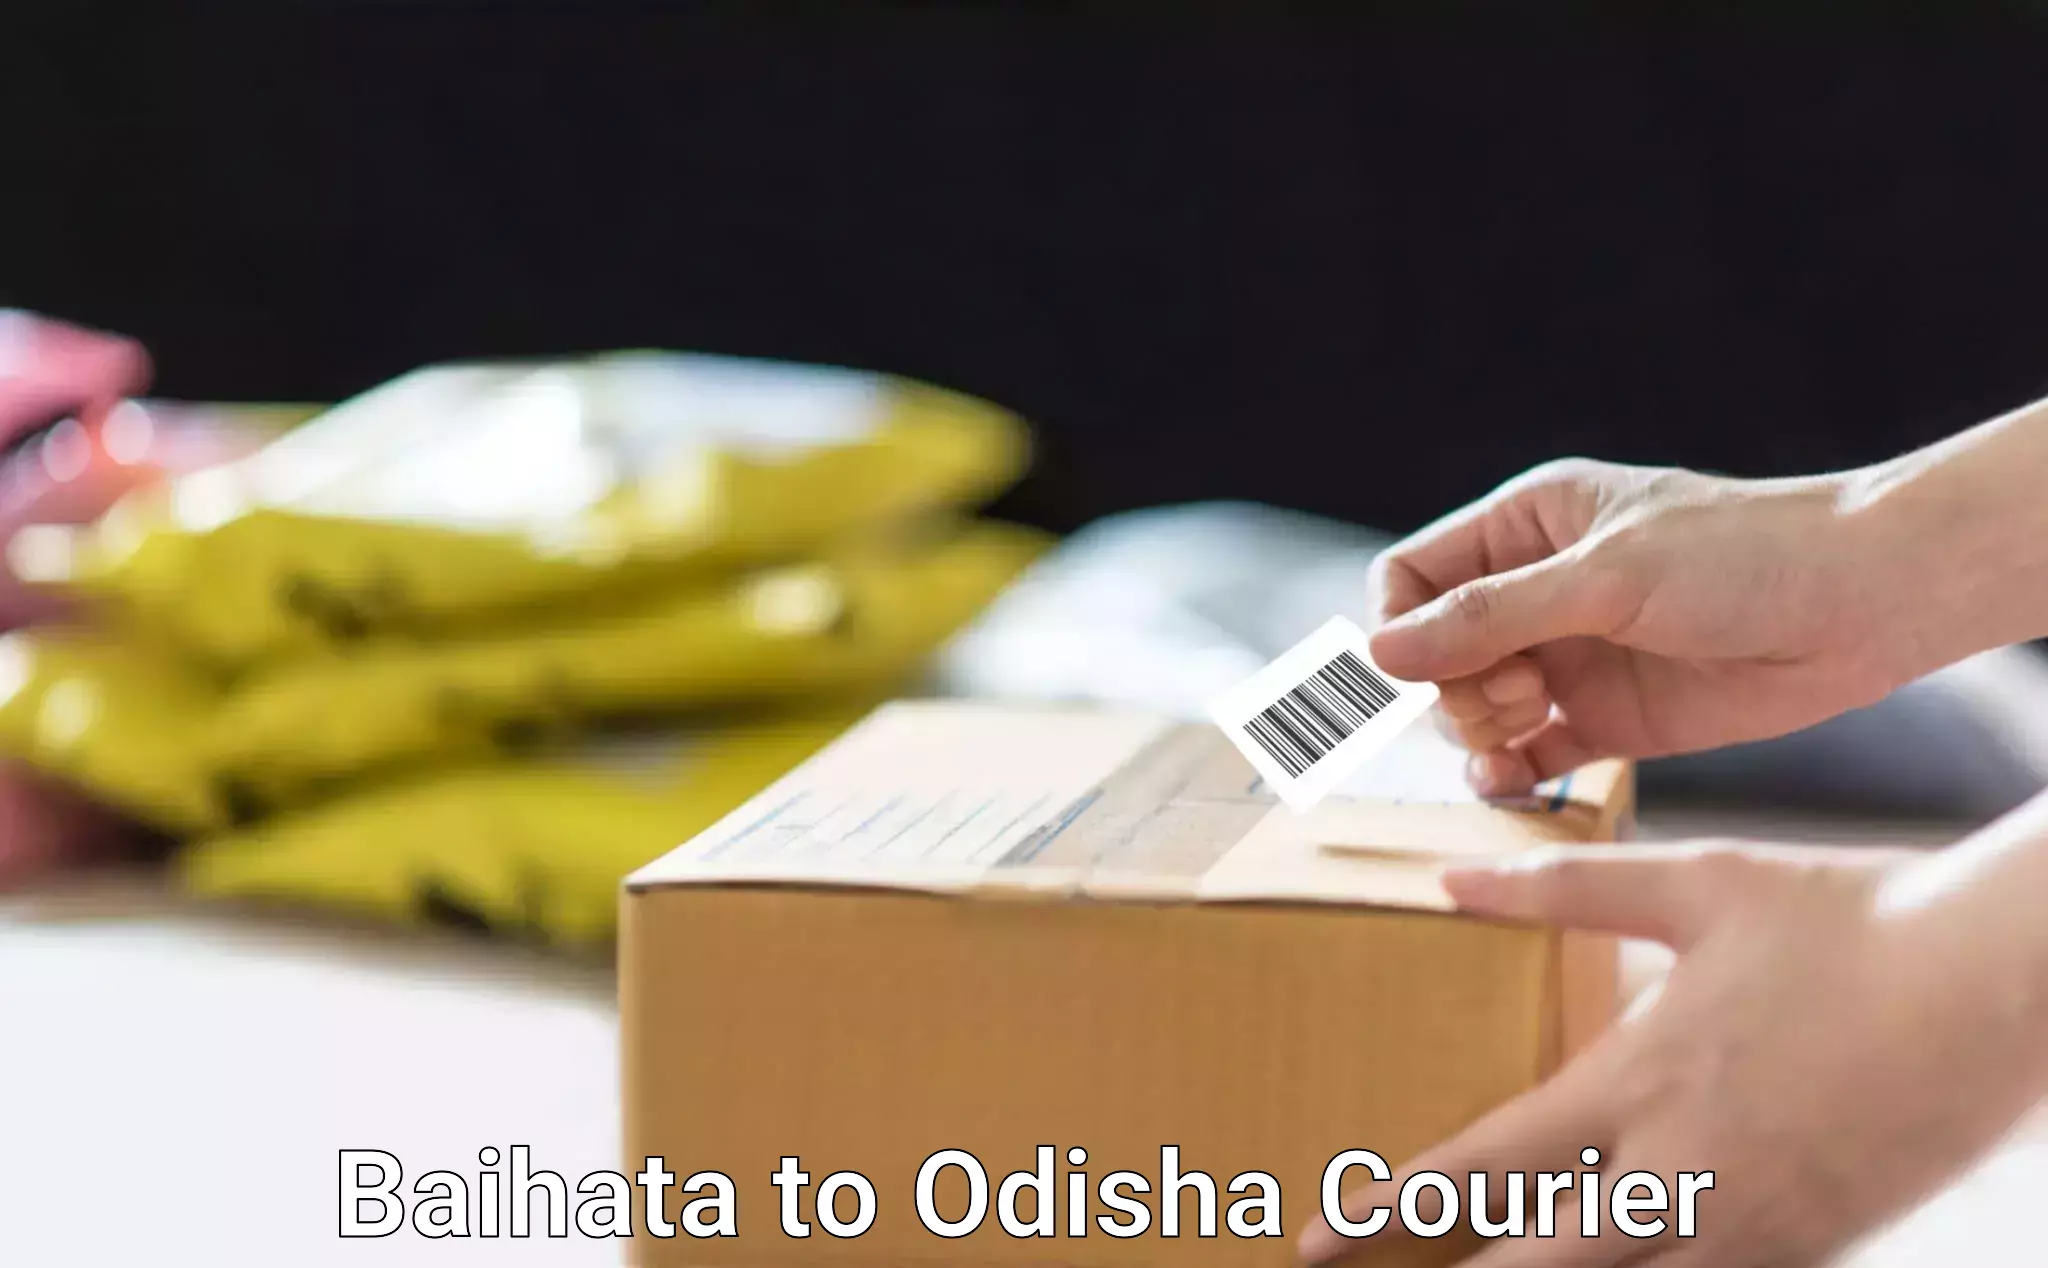 Logistics service provider Baihata to Sundergarh